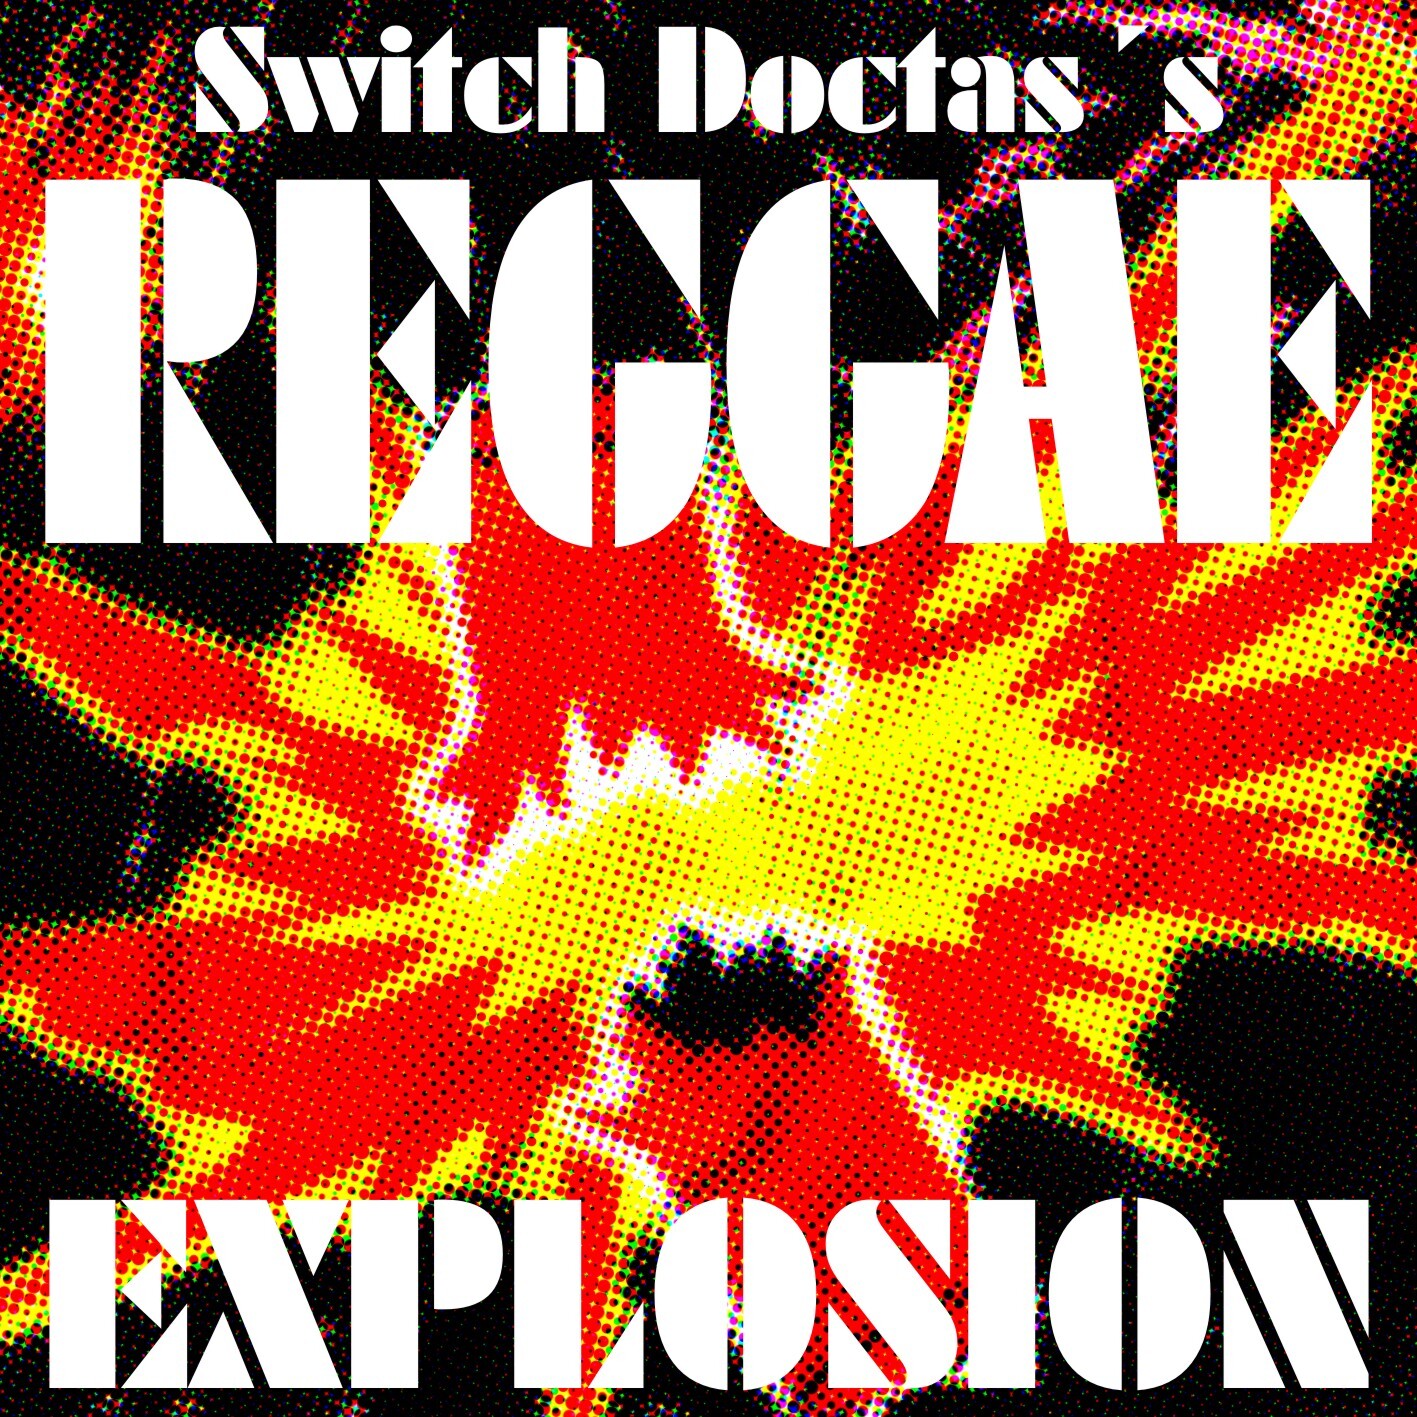 38_Reggae_Explosion_front_gross.jpg